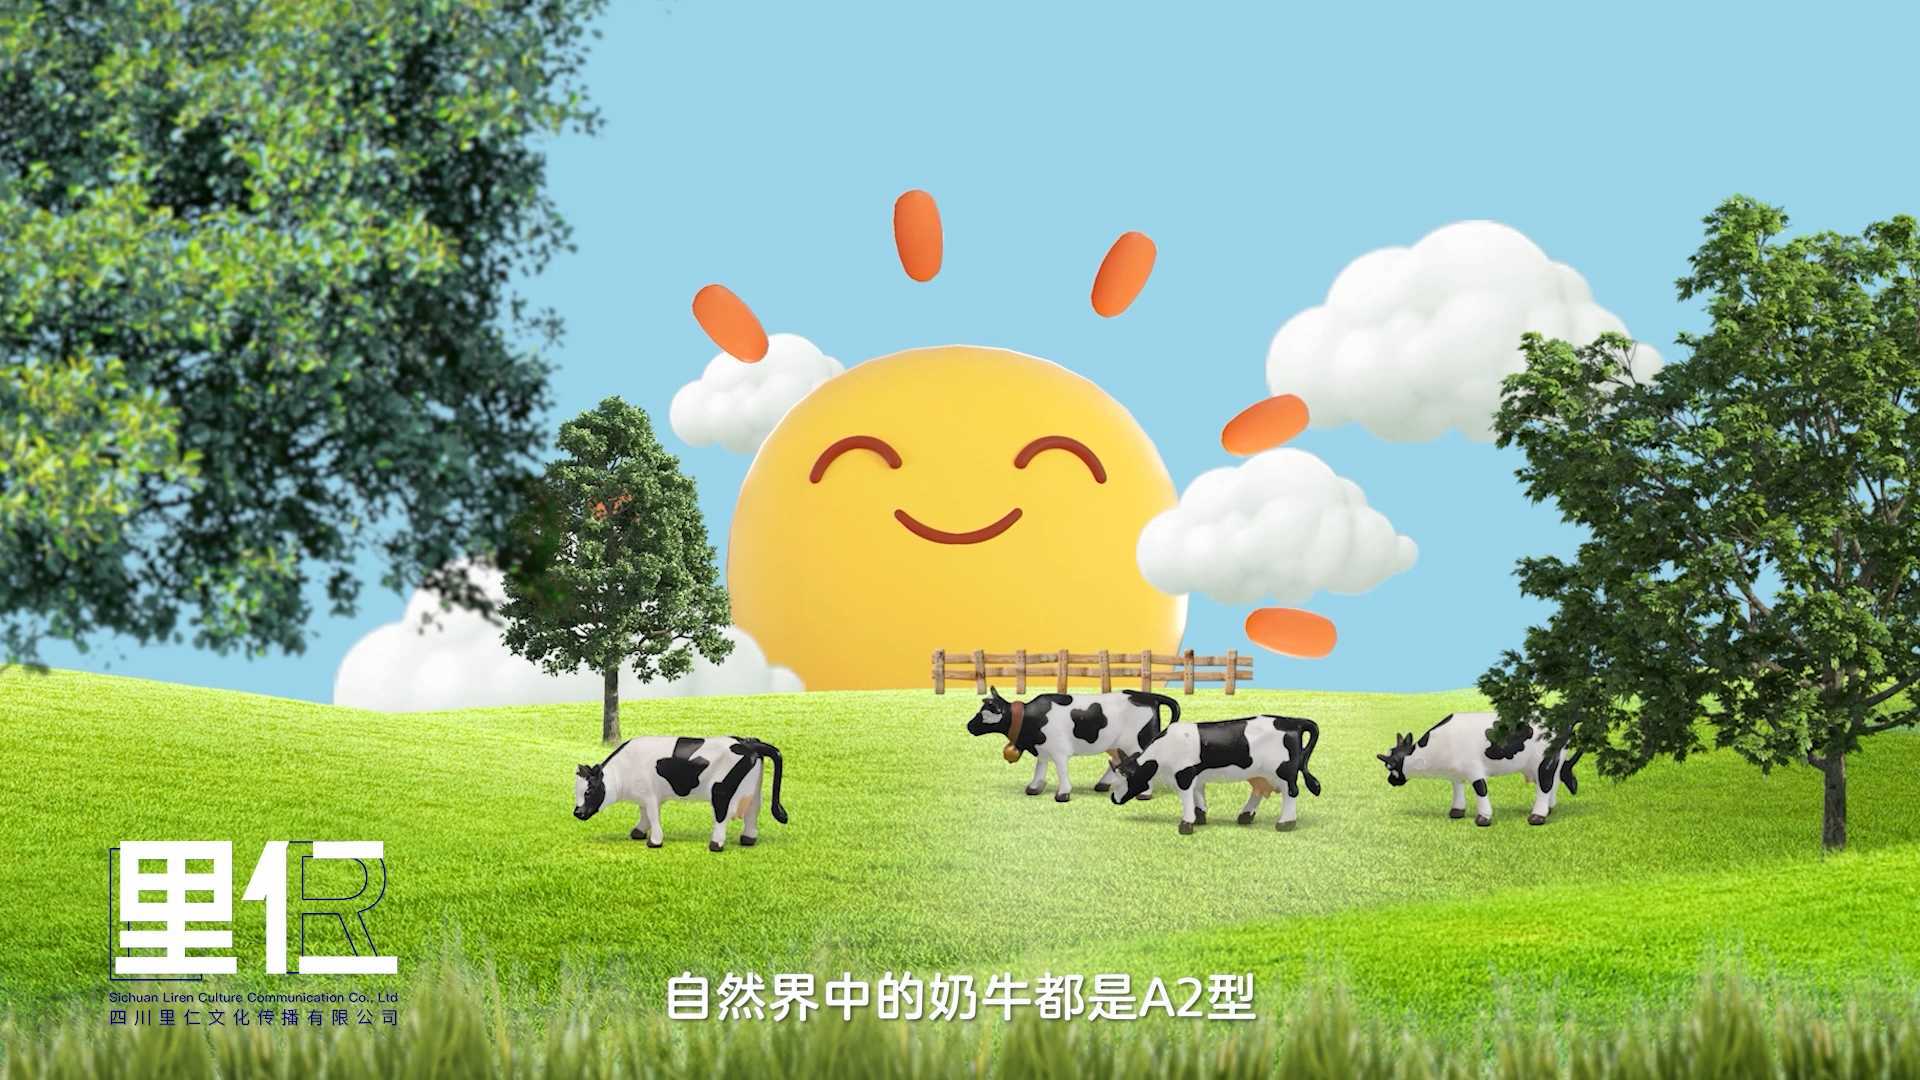 飞鹤A2蛋白的奶粉｜产品创意定格动画广告